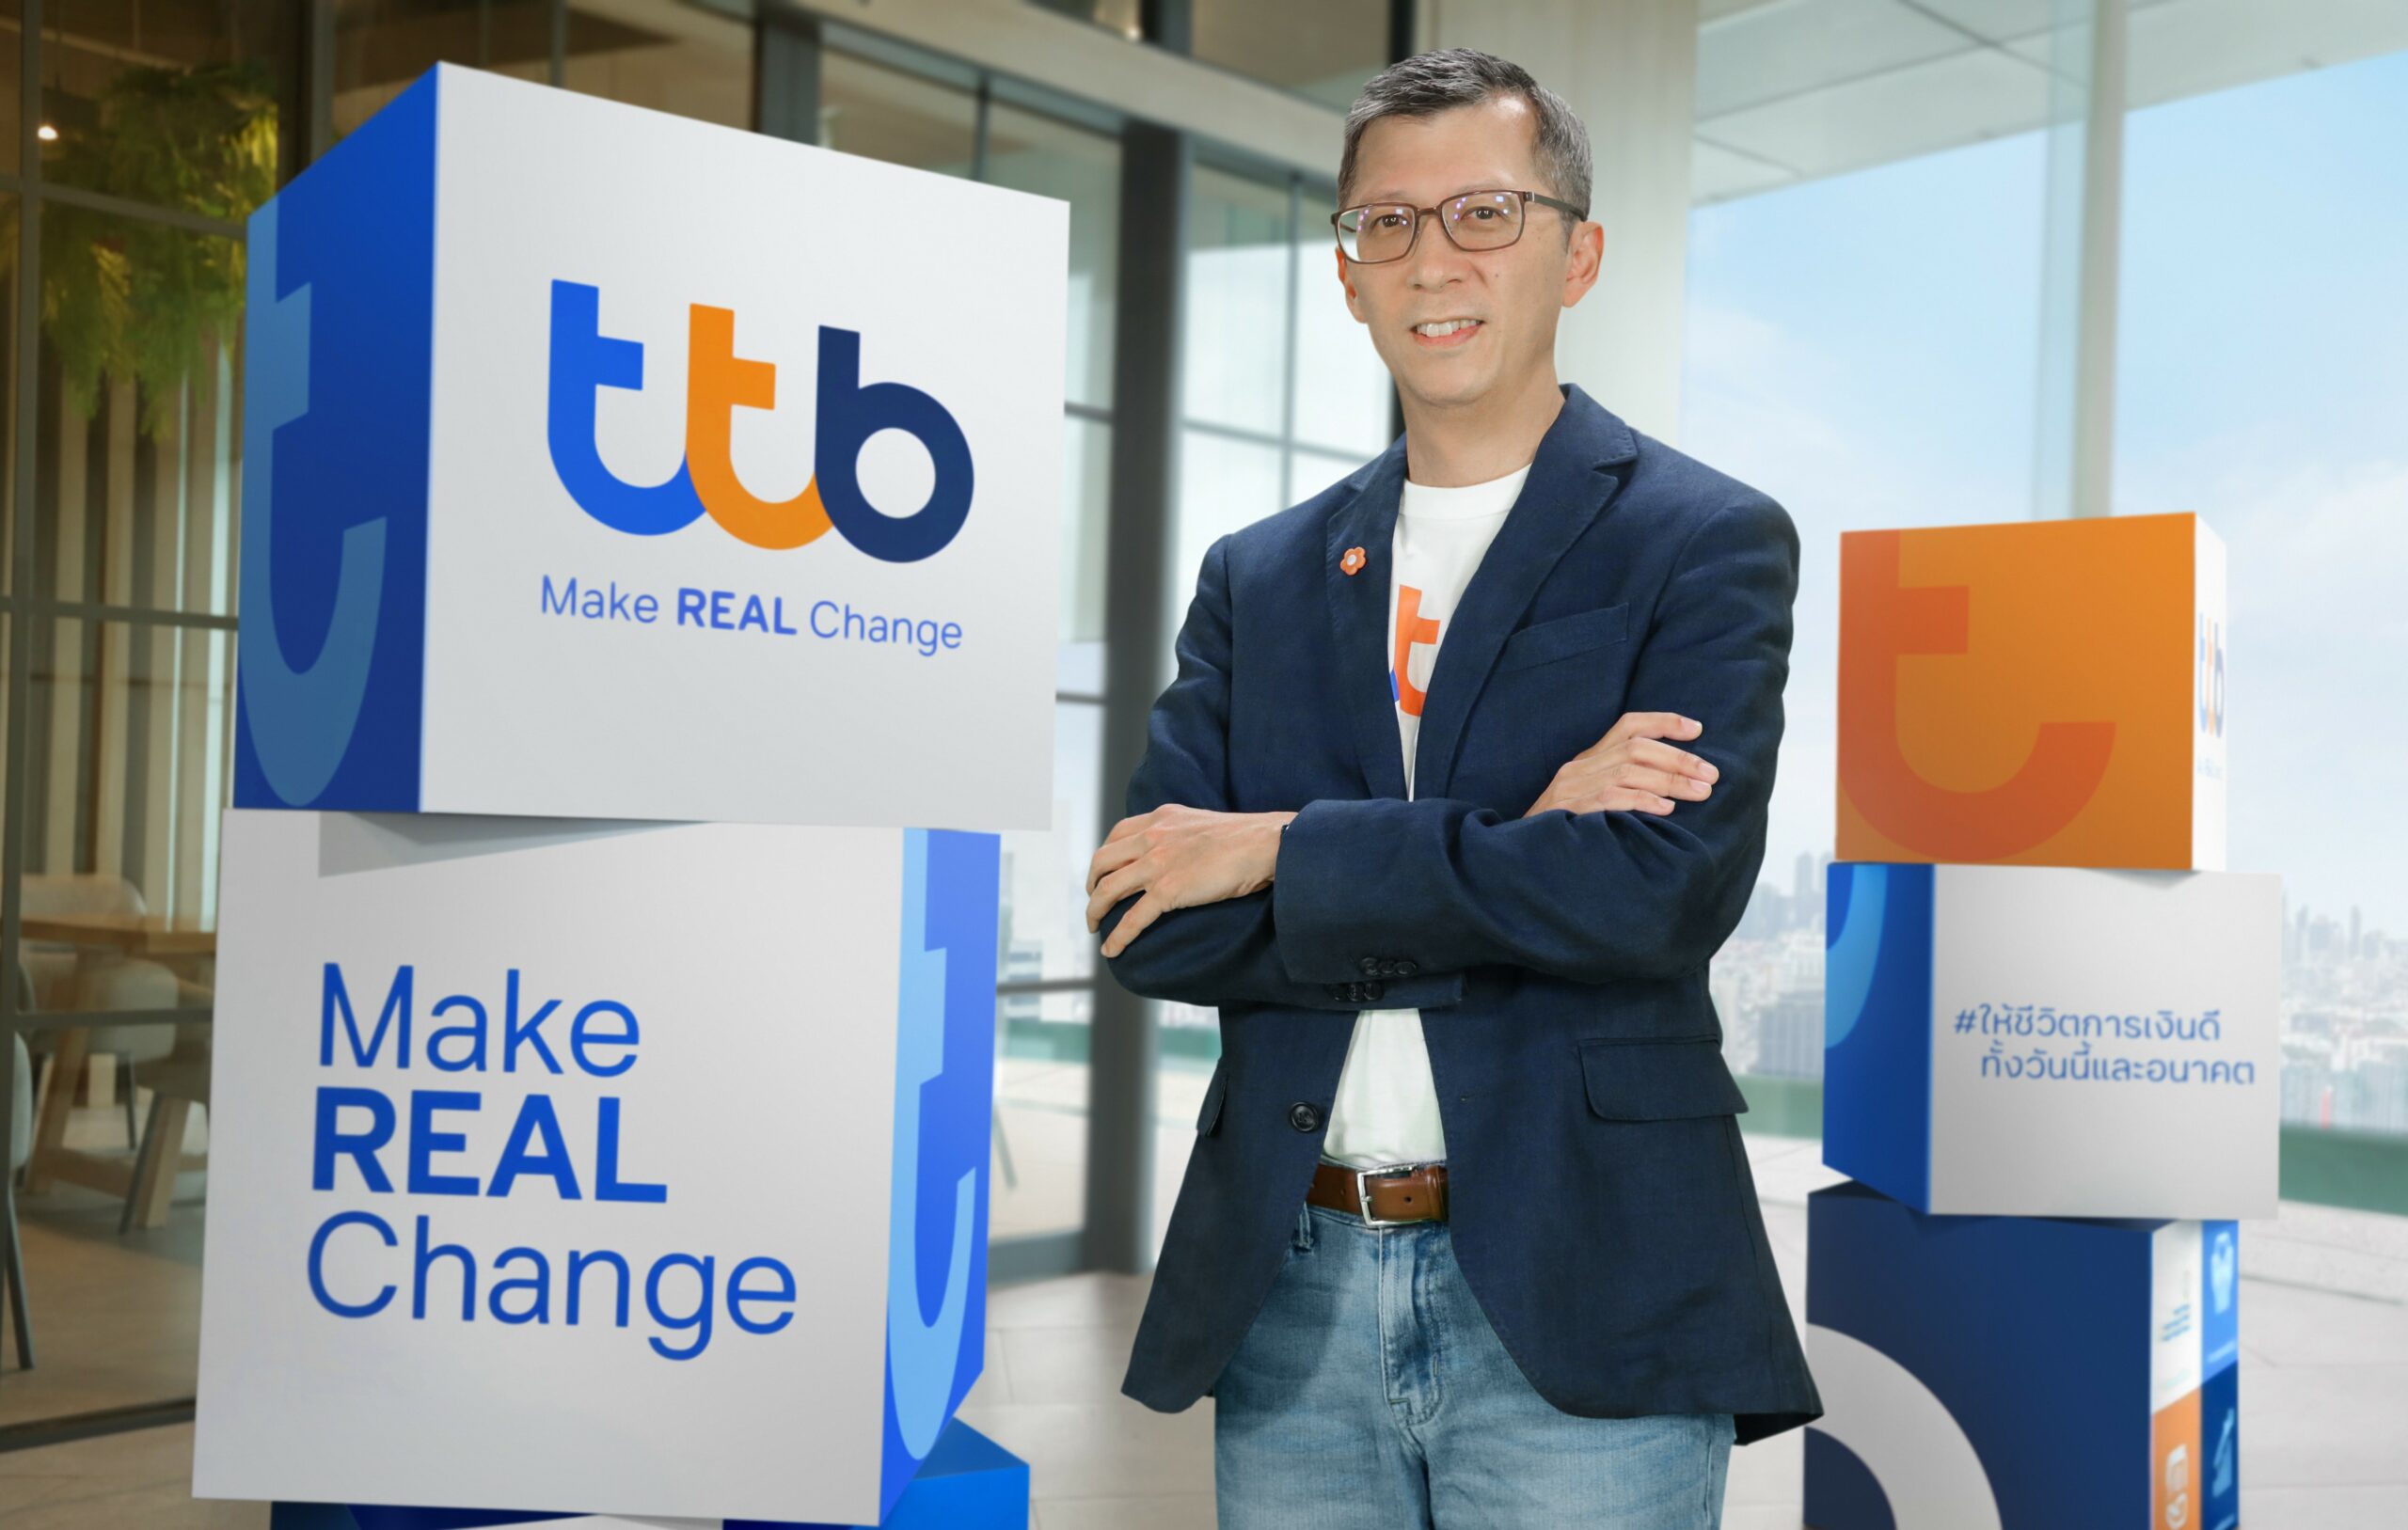 ทีเอ็มบีธนชาต 'Make REAL Change' โชว์กำไรครึ่งปีแรกโต 25%  พร้อมโซลูชันทางการเงินที่ตอบโจทย์ลูกค้า - ThaiPublica